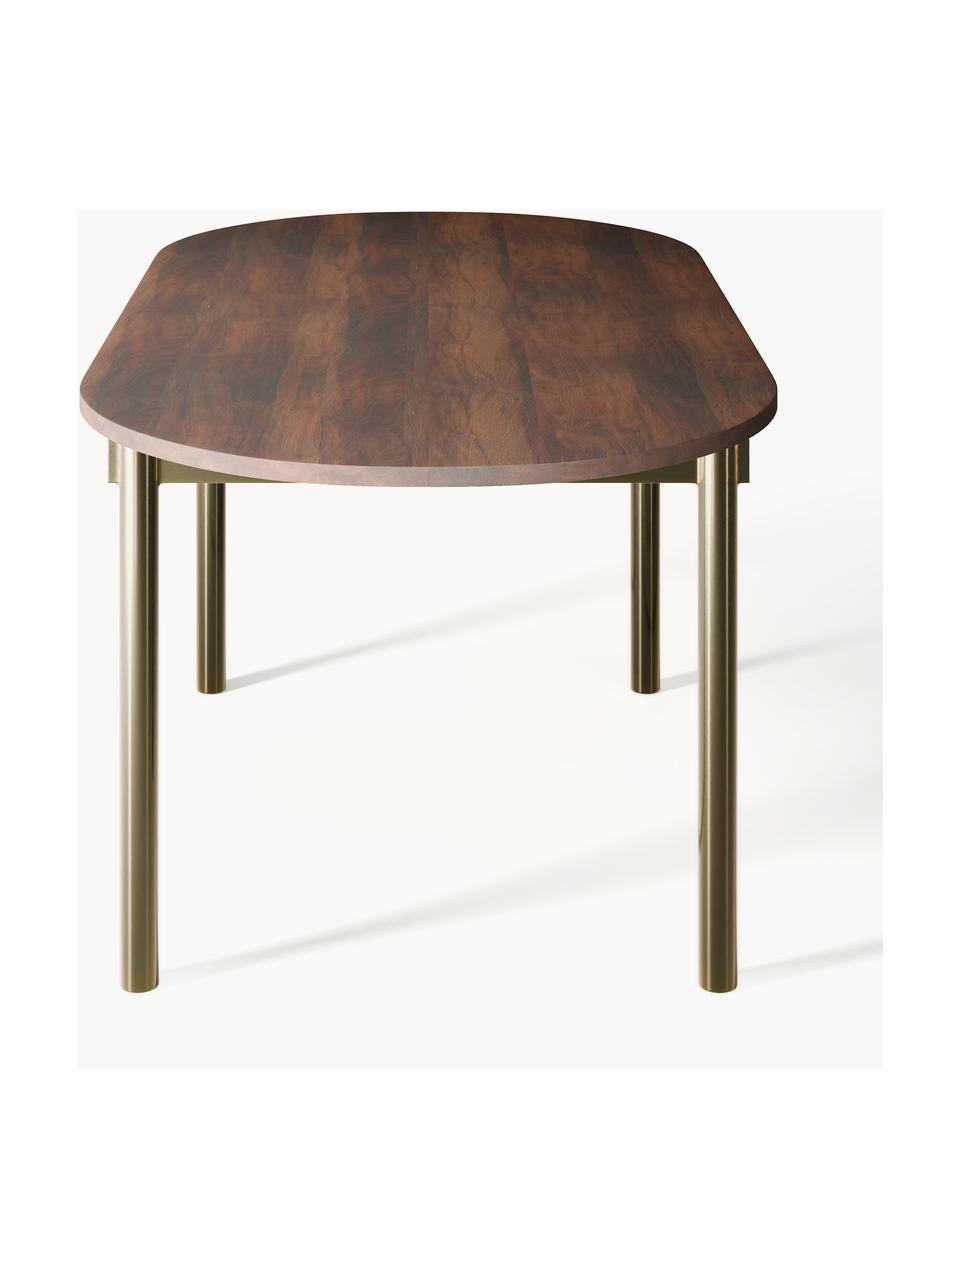 Owalny stół do jadalni Mavi, różne rozmiary, Blat: drewno akacjowe olejowane, Nogi: metal malowany proszkowo, Drewno akacjowe, S 180 x G 90 cm